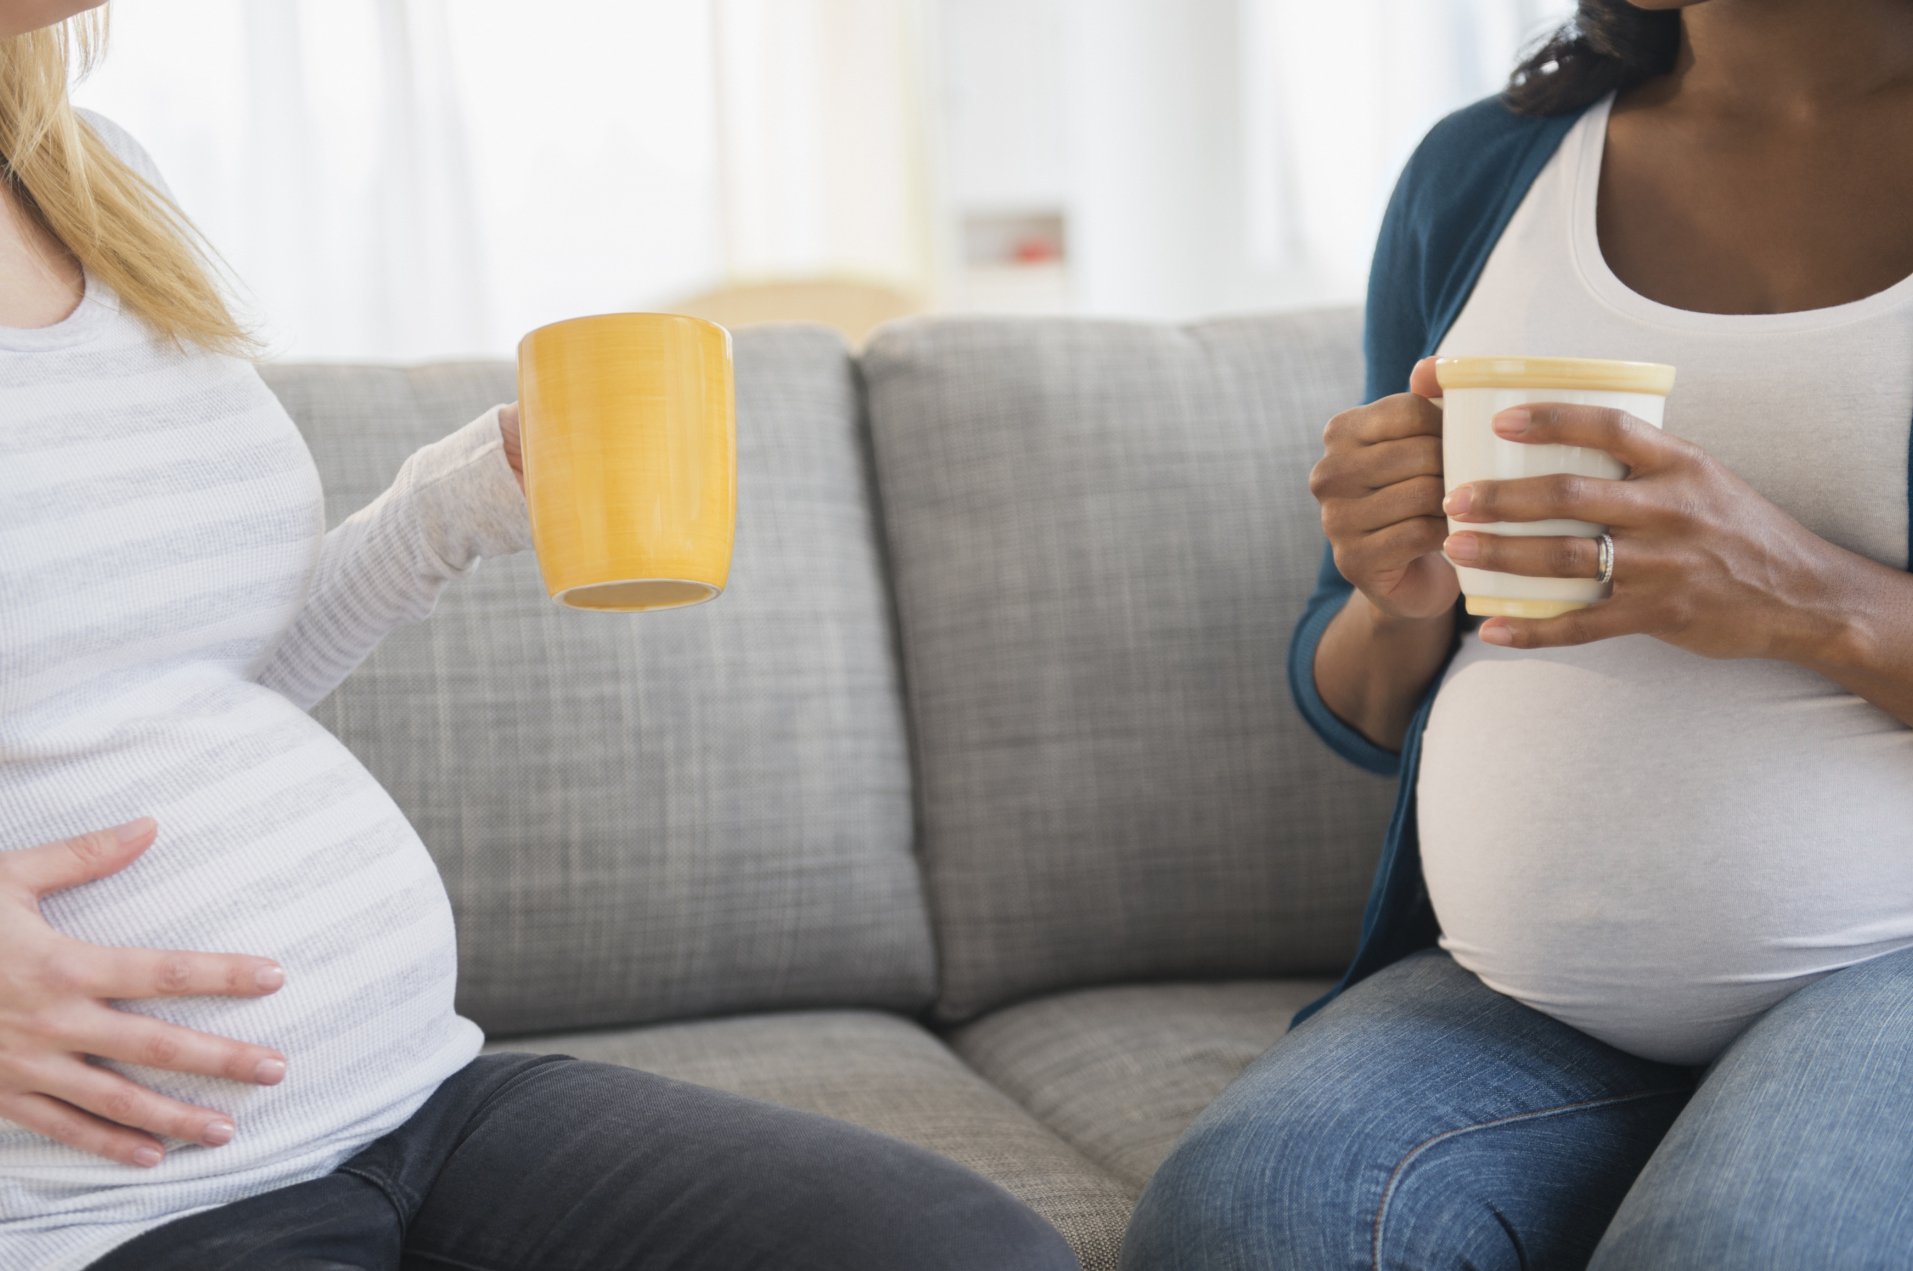 تناول الكافيين يوميا أثناء الحمل حتى باعتدال يؤثر على نمو الجنين